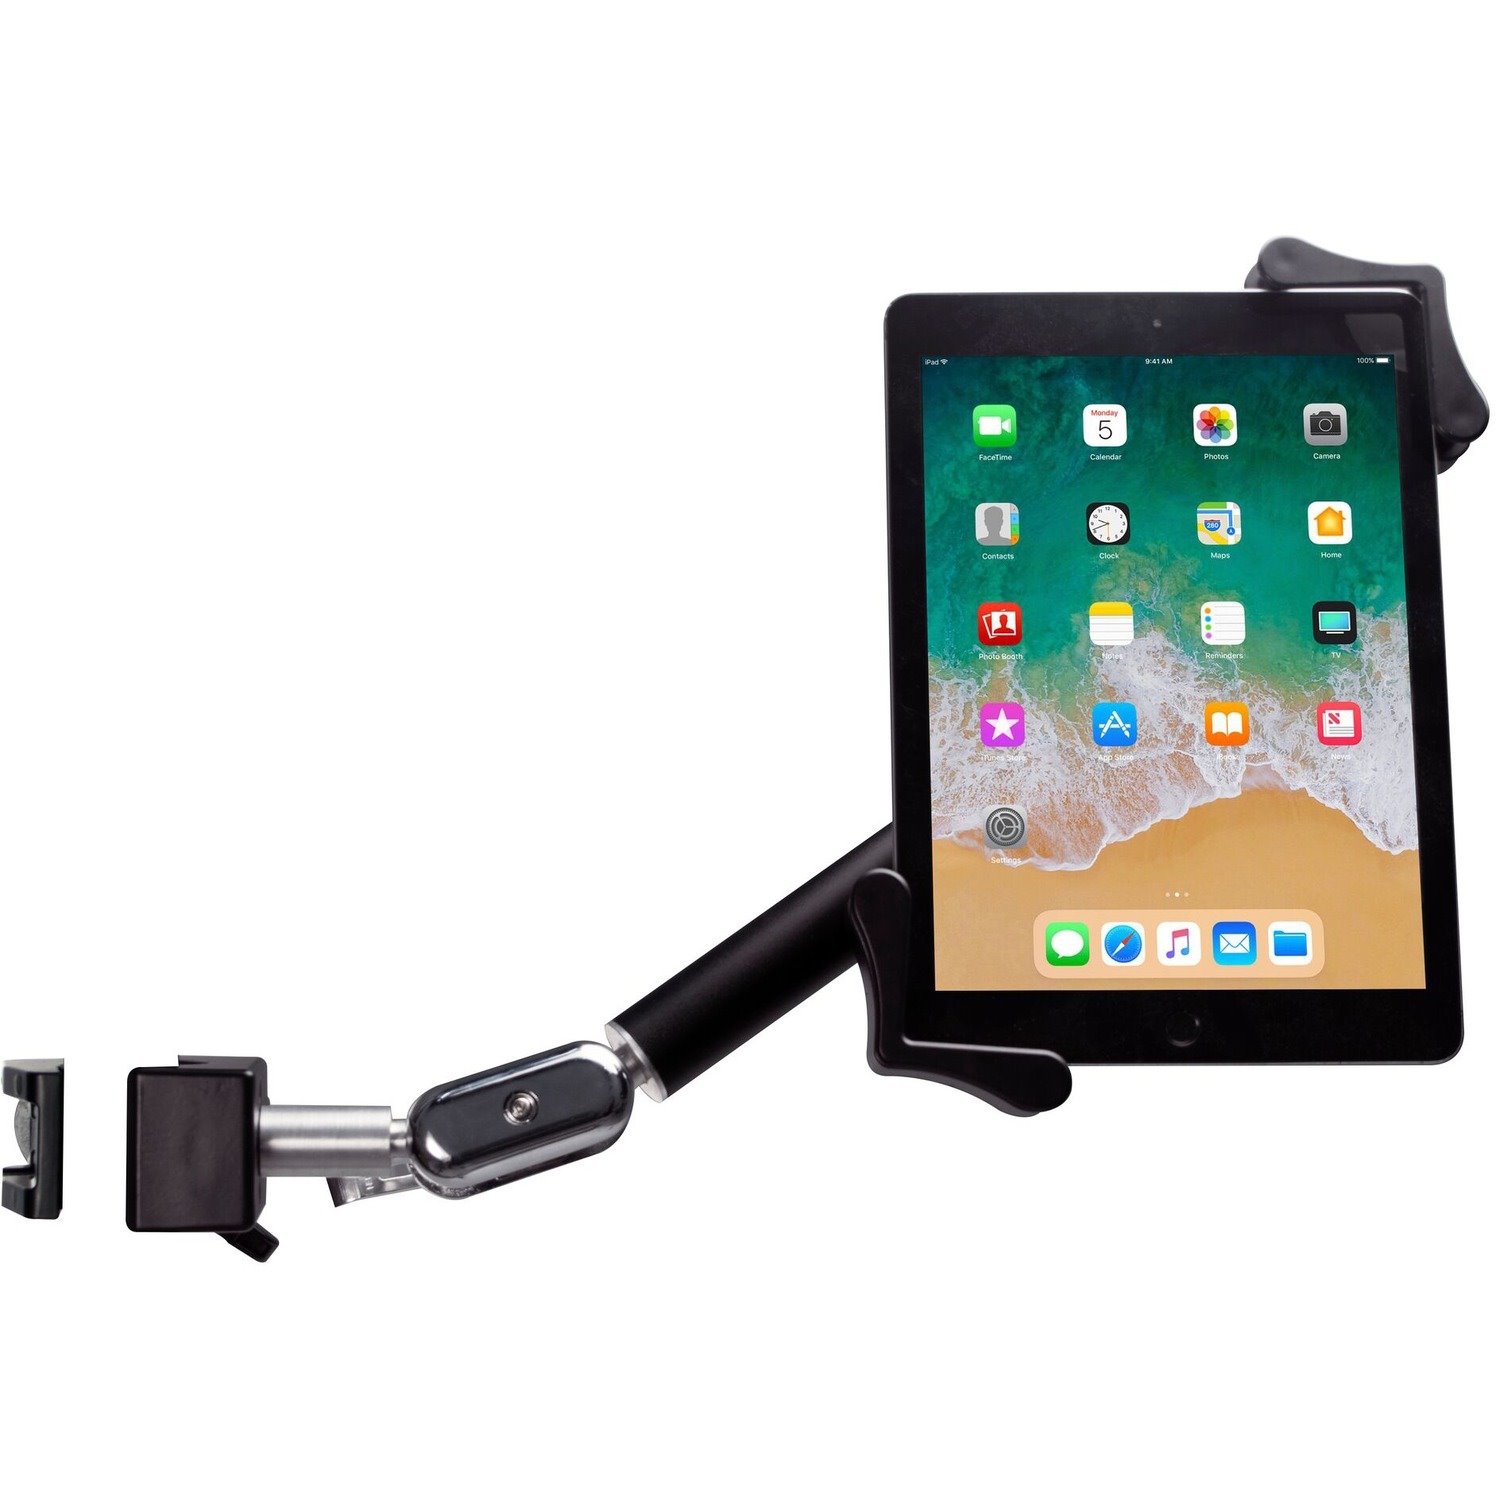 CTA Digital Clamp Mount for Tablet, iPad, iPad Pro, iPad mini, iPad Air